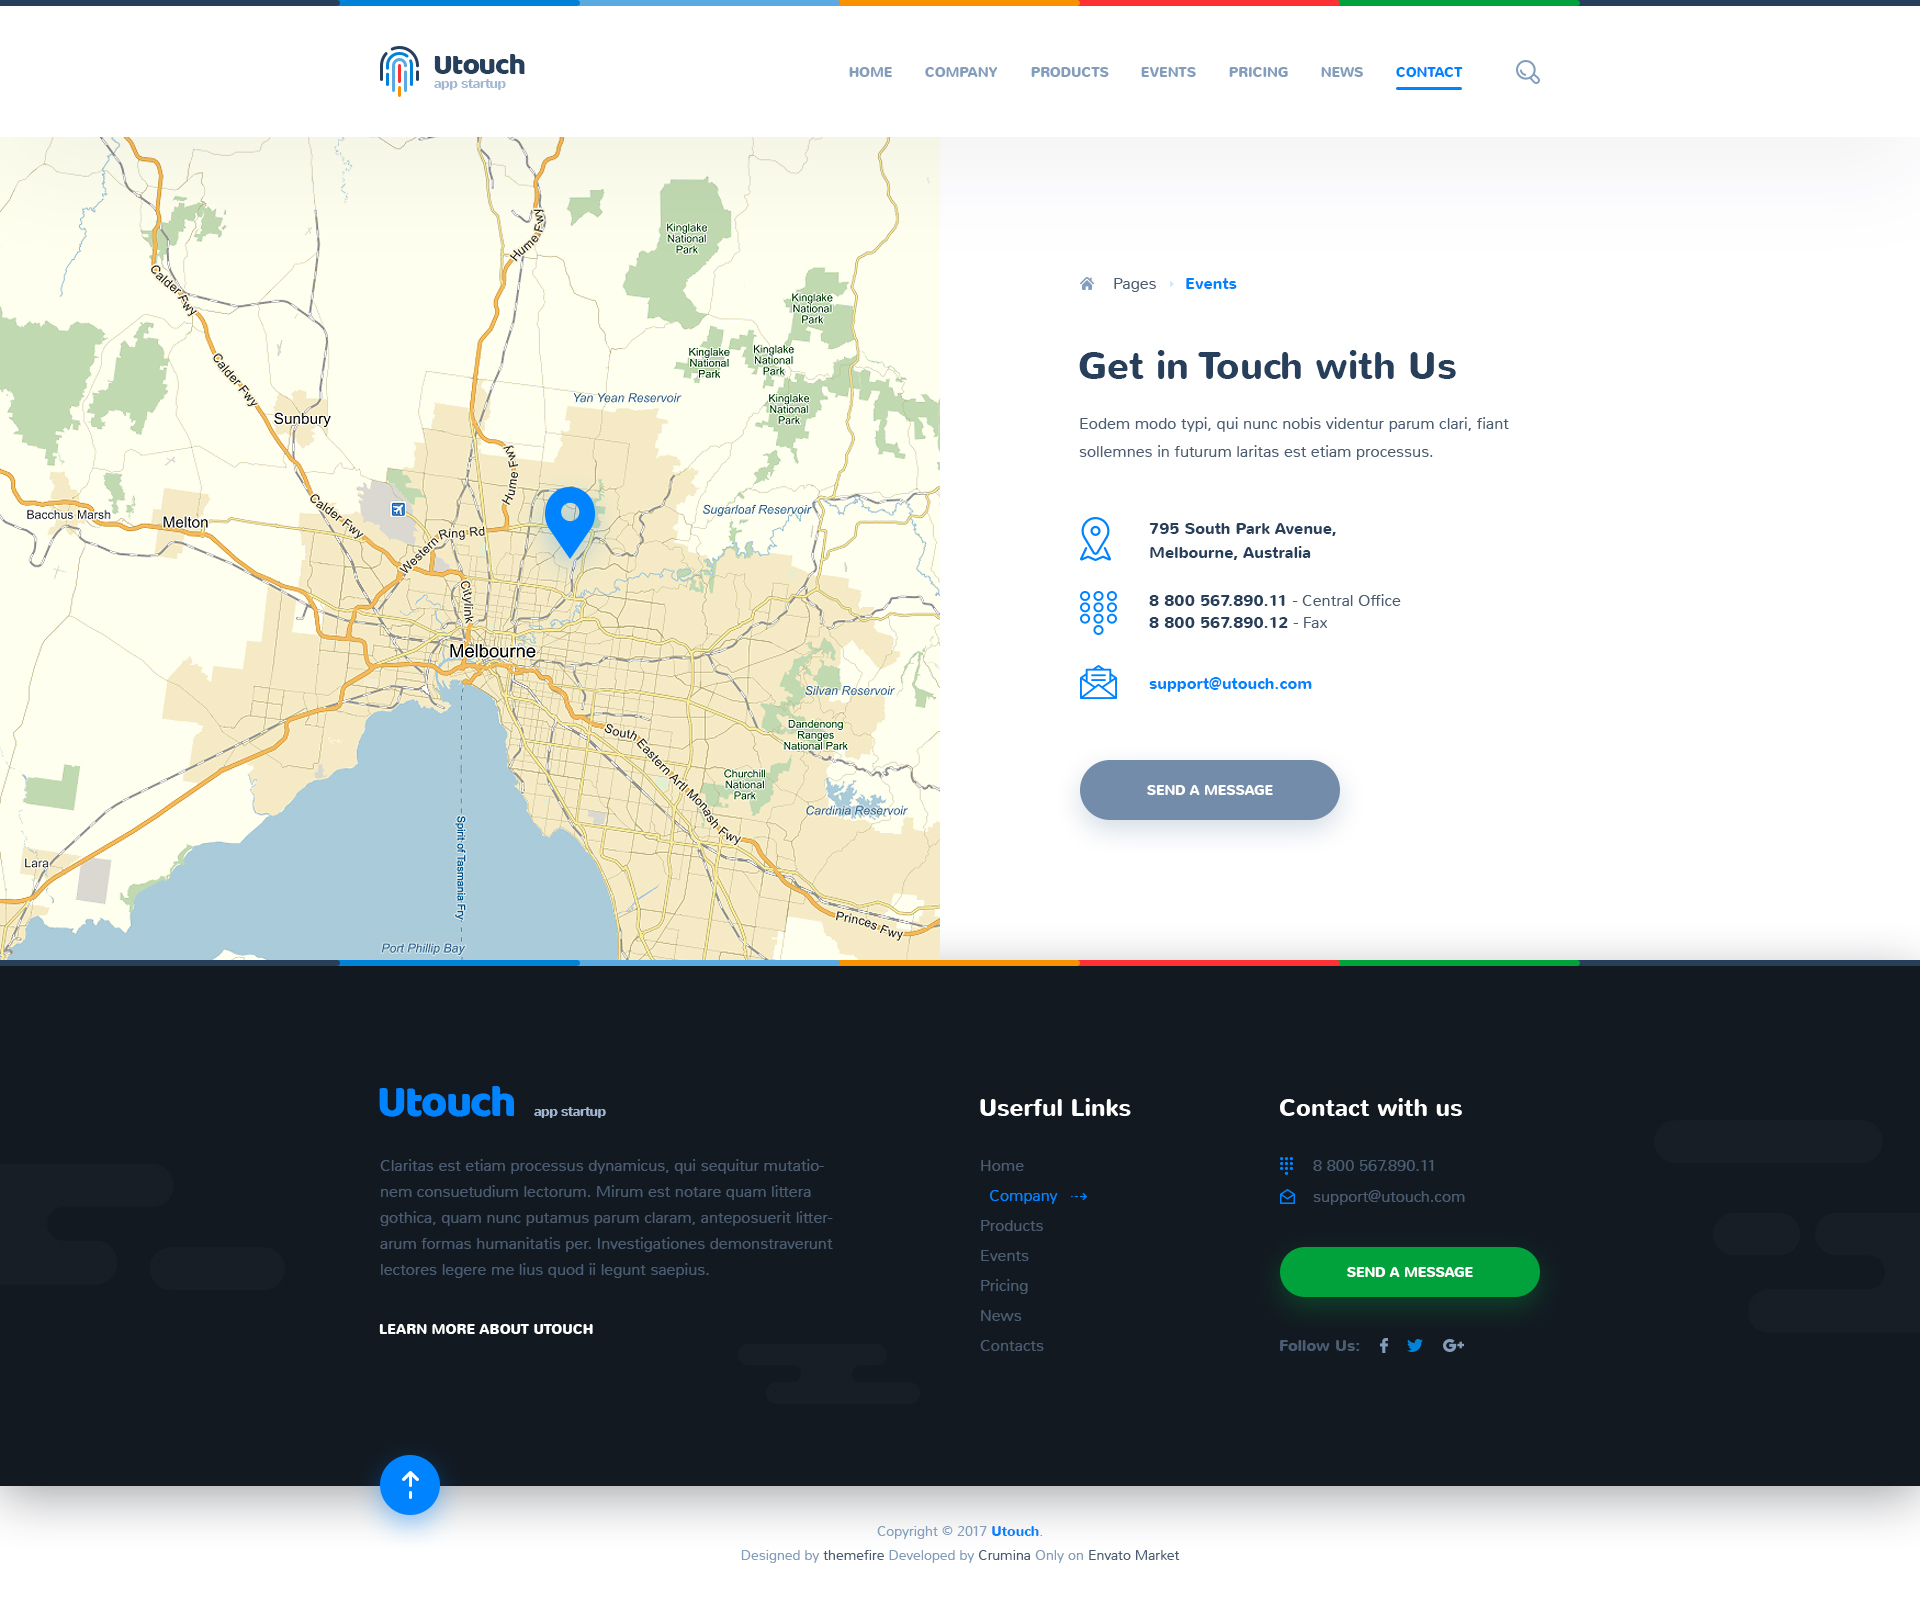 Utouch - App Startup Website PSD Template